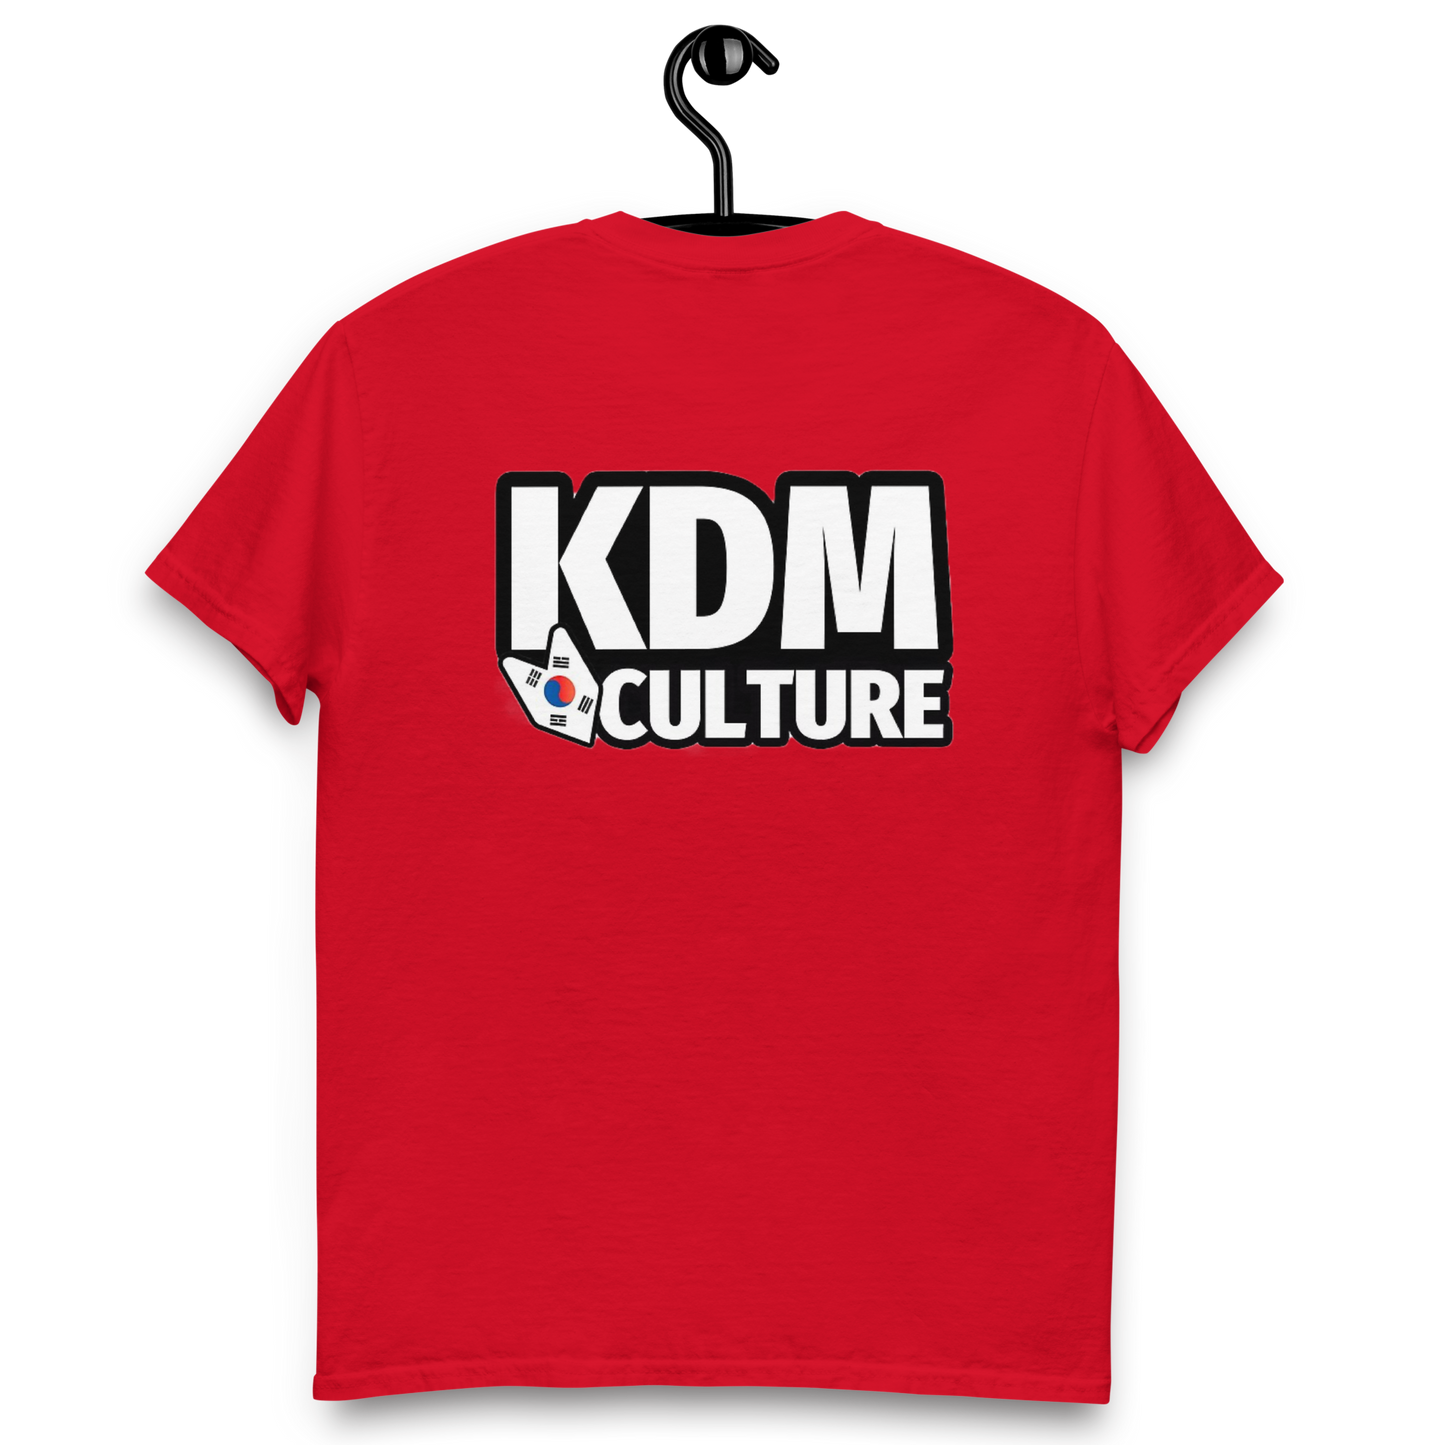 KDM culture t-shirt